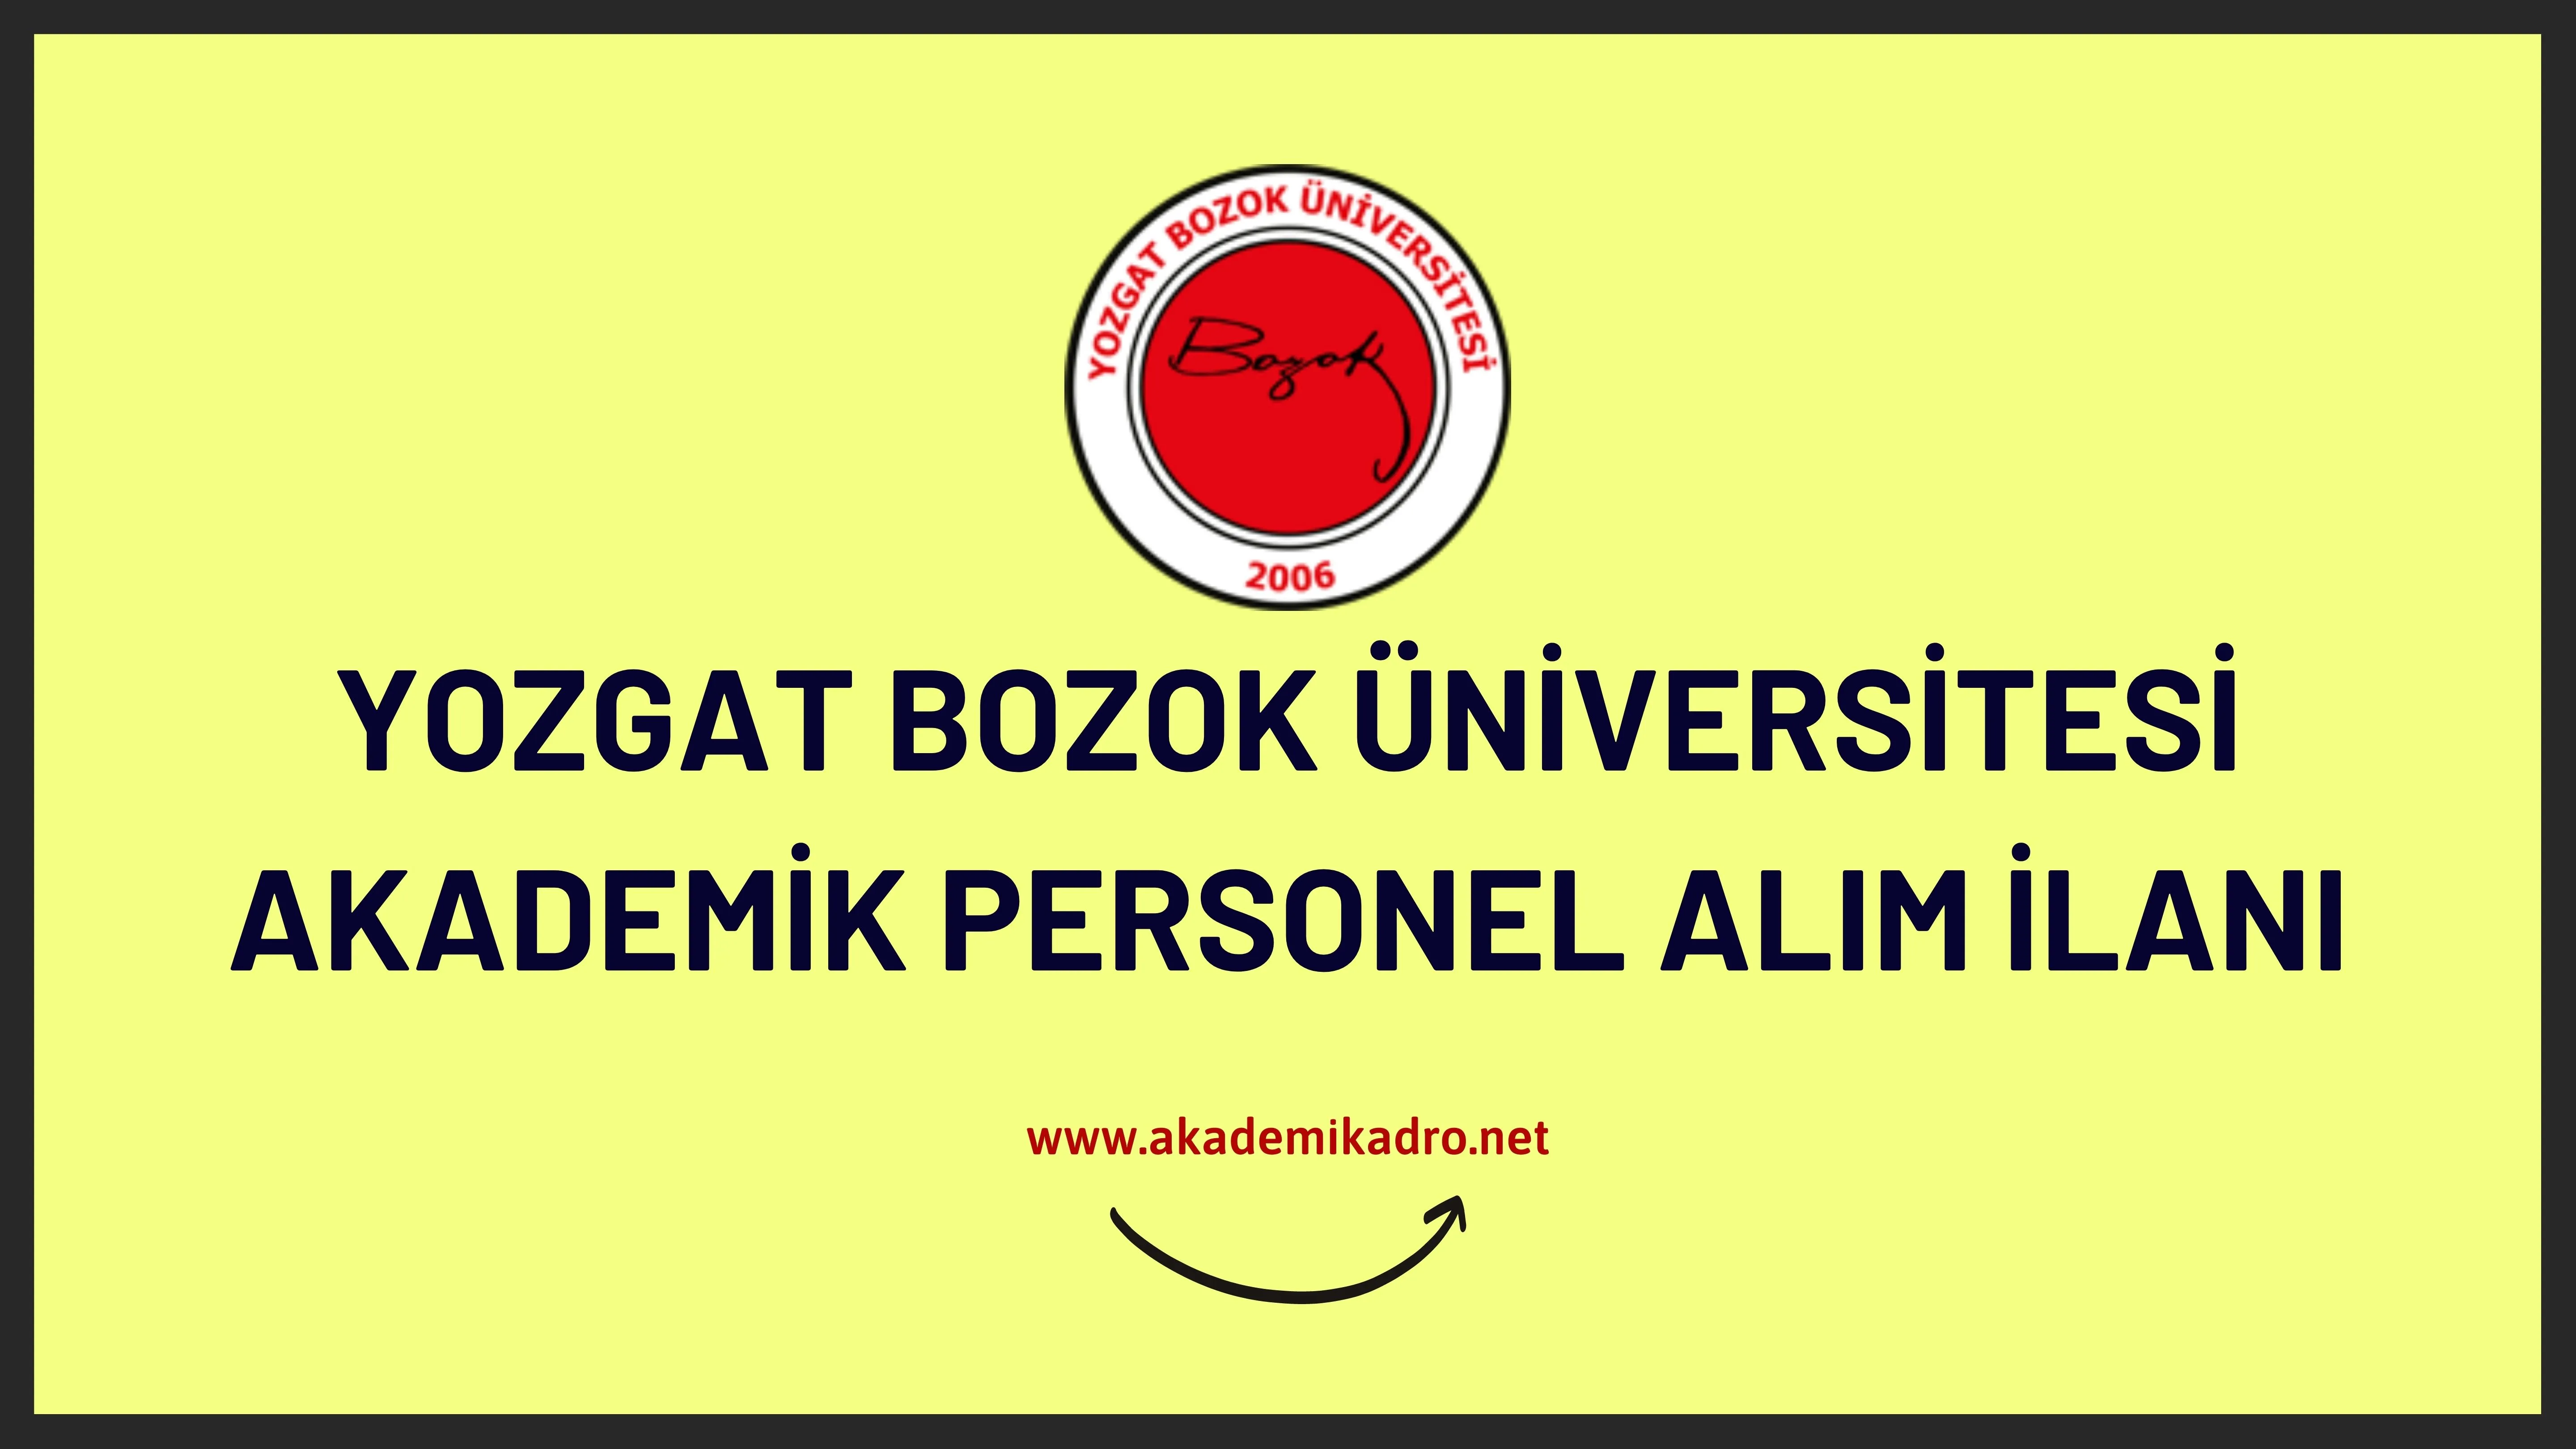 Yozgat Bozok Üniversitesi birçok alandan 39 akademik personel alacak.